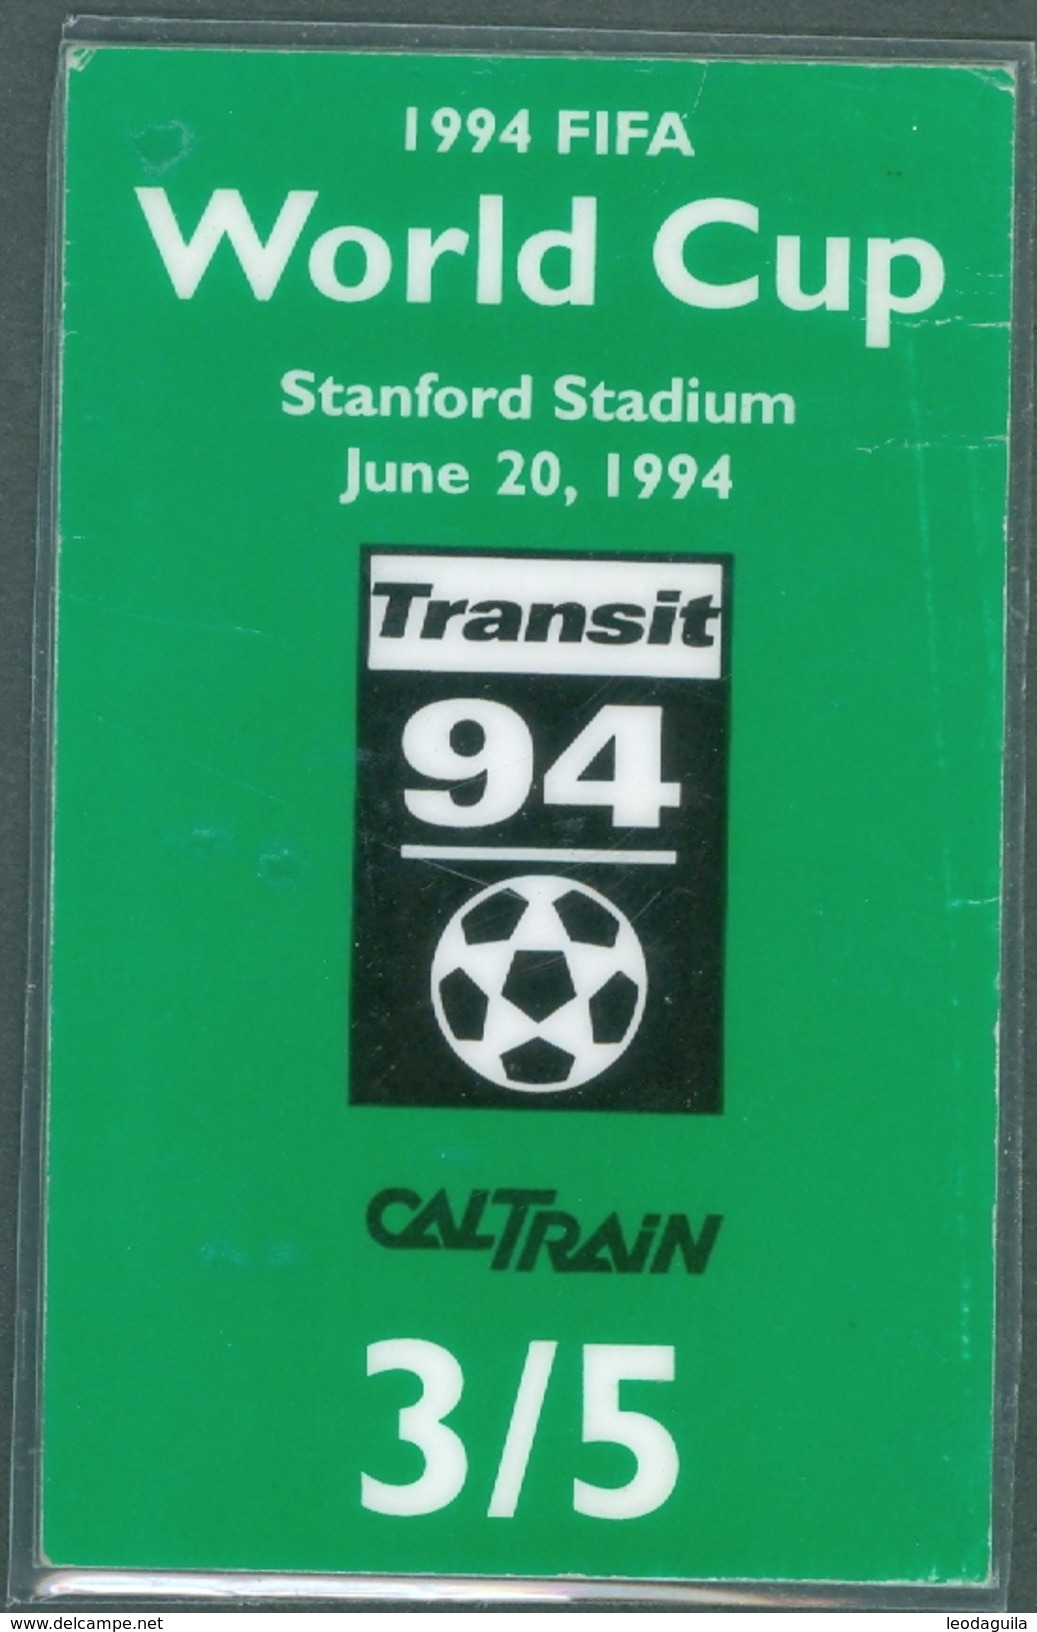 RAILWAY TICKET  -   CALTRAIN TICKET TO STANFORD STADIUM - USA  - FIFA WORLD CUP 1994 - Welt